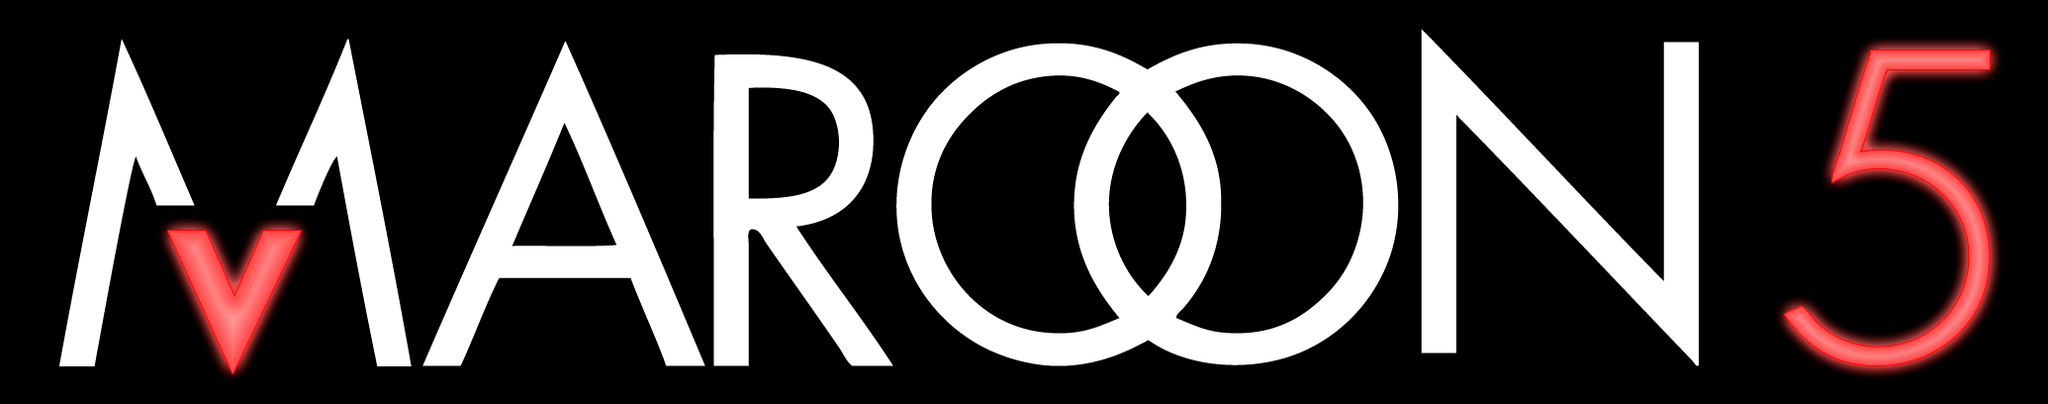 New Maroon 5 Logo - Maroon 5 logo png 2 PNG Image